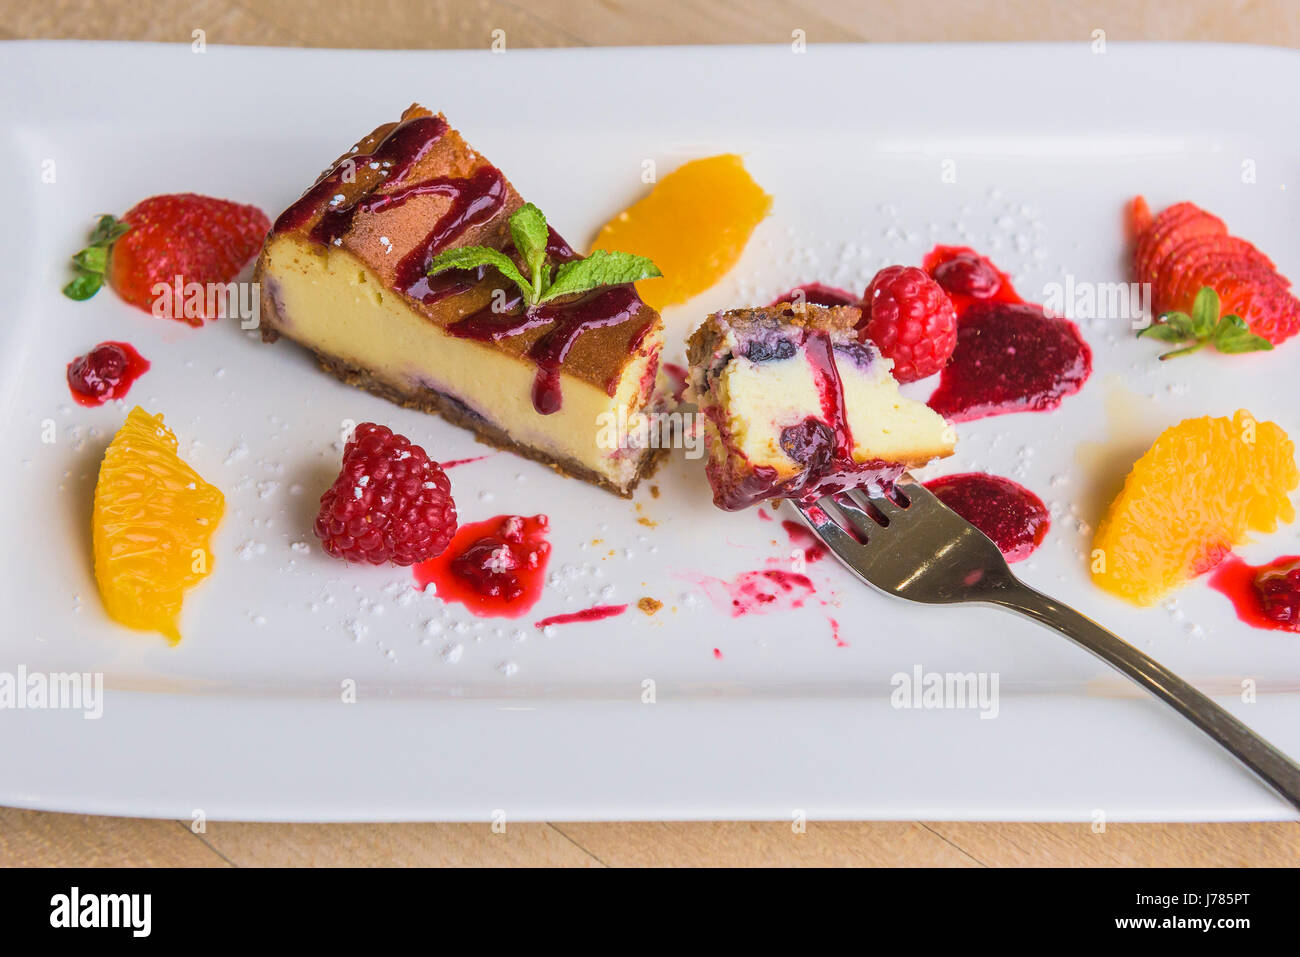 Eine Nahaufnahme von einem bunten Dessert in einem Restaurant serviert; Essen; Süße; Pudding; Käsekuchen; Frucht; Lecker; Attraktive Präsentation; Zu behandeln; Stockfoto